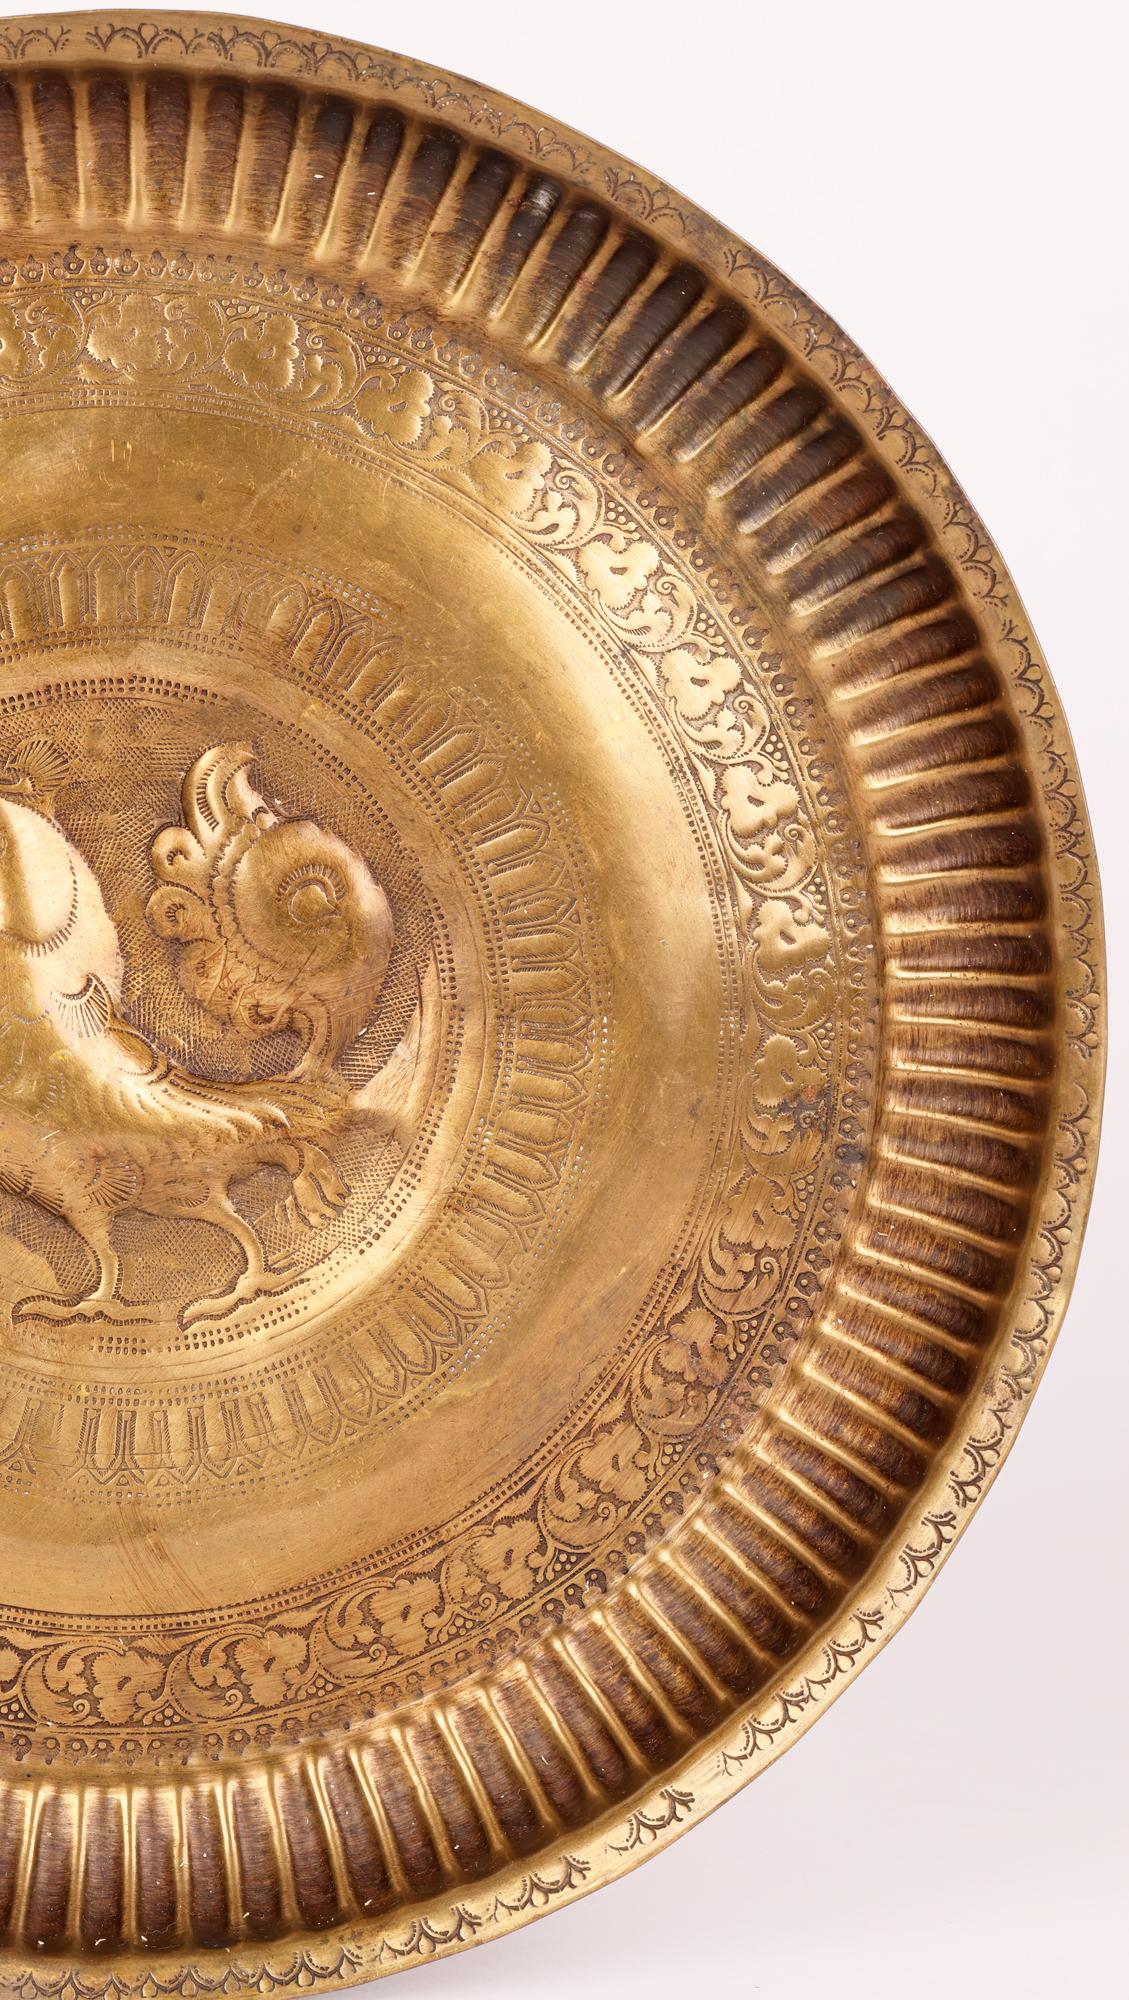 Indian Asian Antique Brass Alms Dish with Hamsa Bird Design In Good Condition For Sale In Bishop's Stortford, Hertfordshire